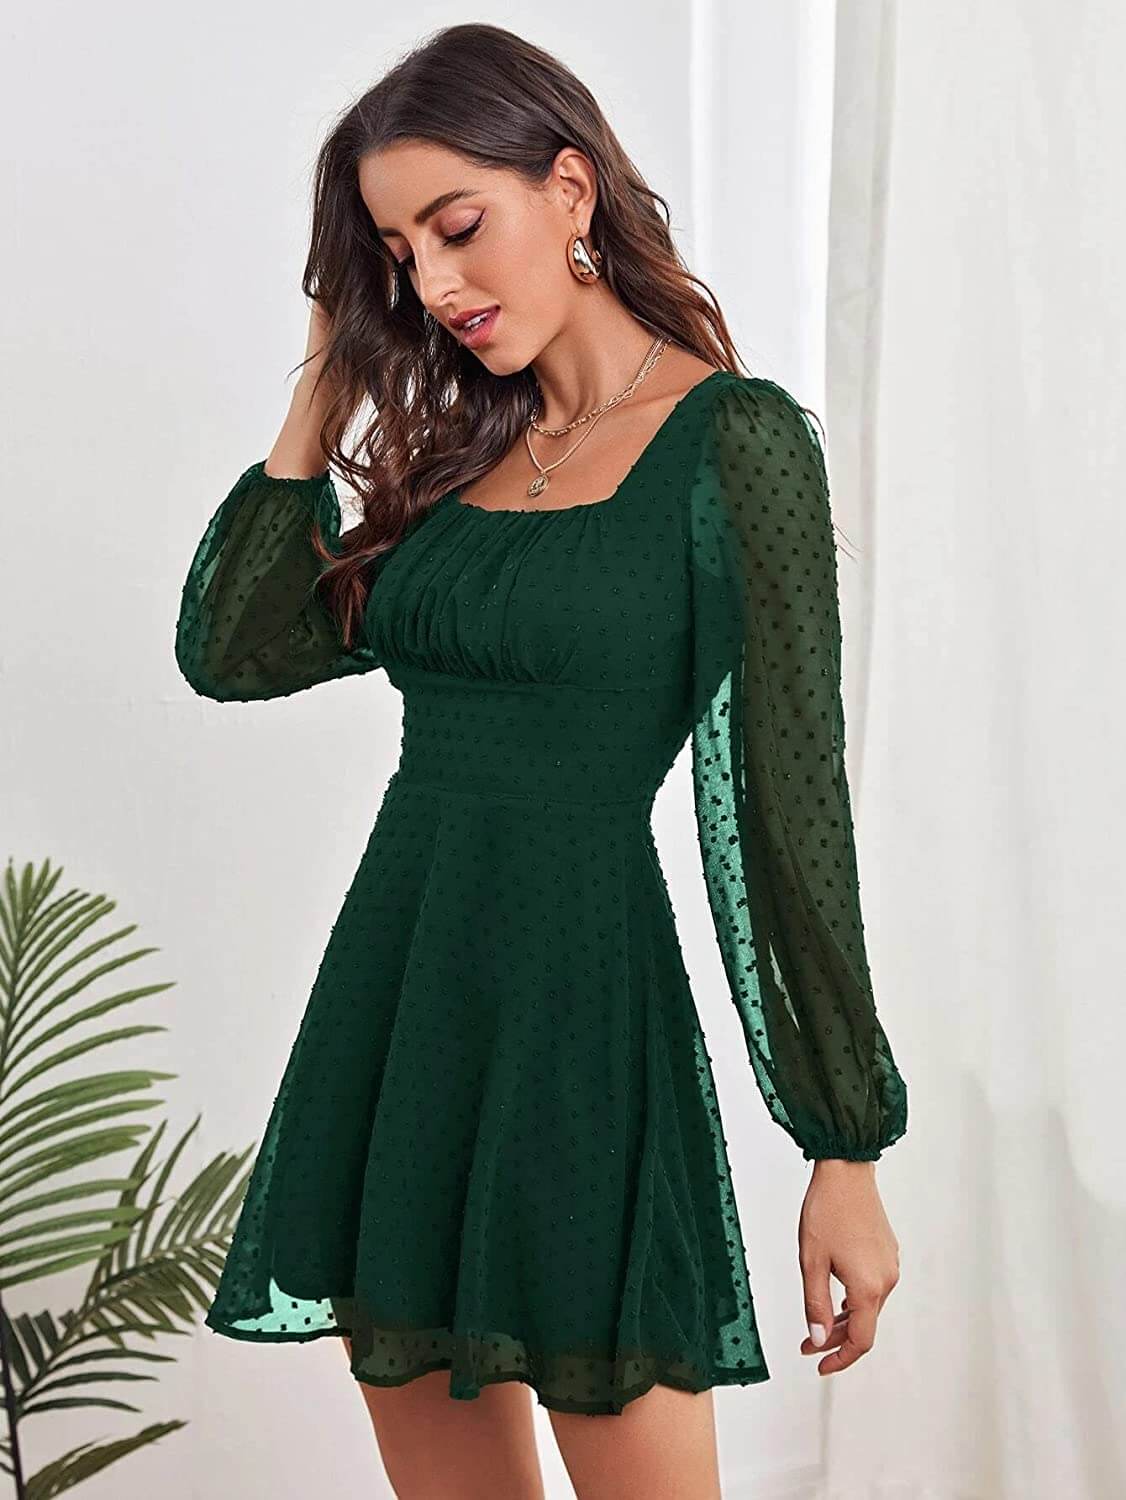 Green Dresses For Women